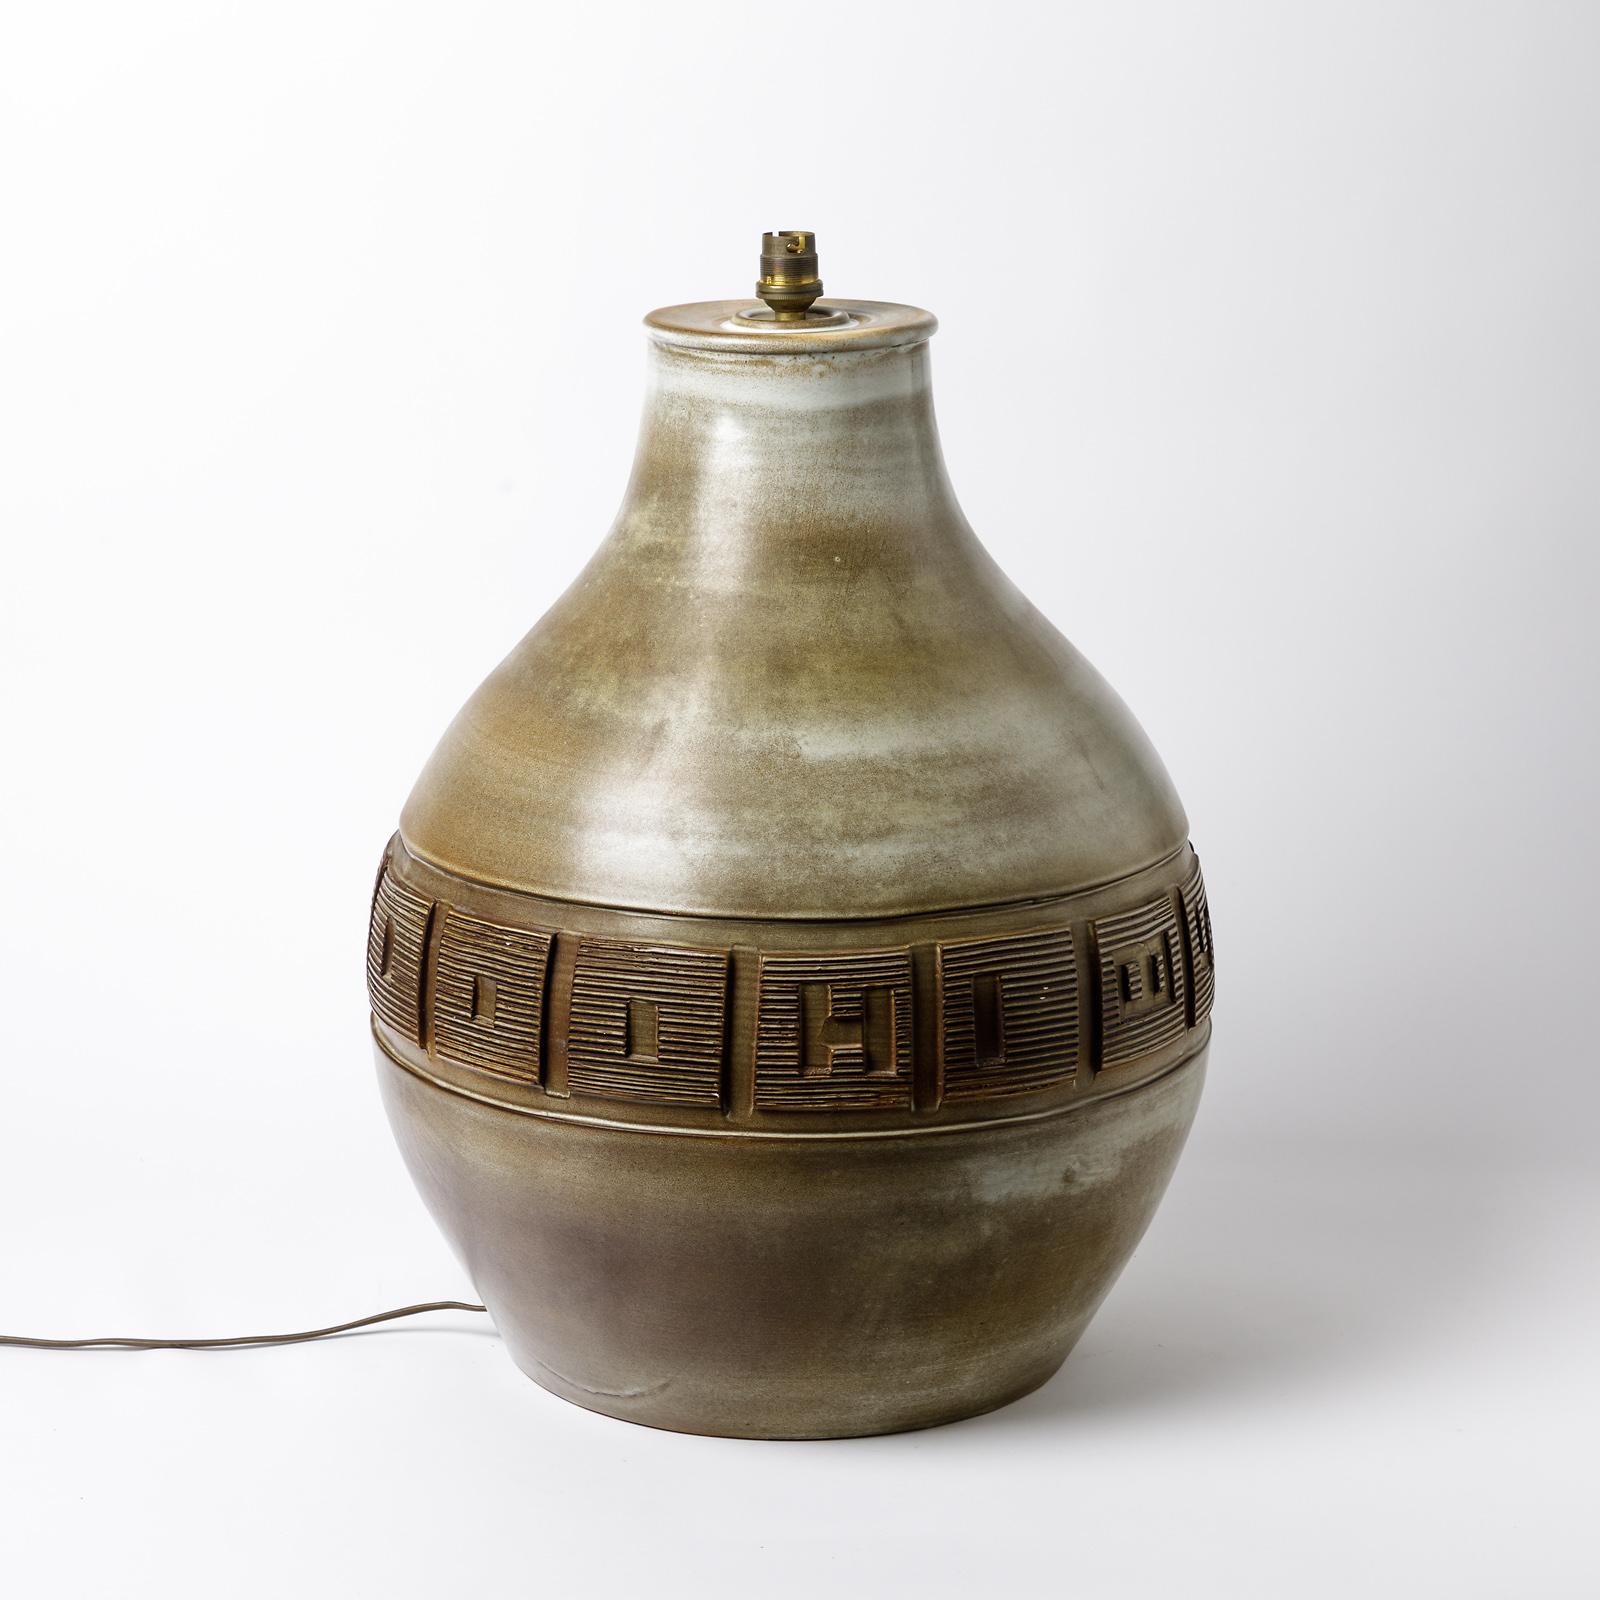 Eine große Keramiklampe von Huguette Bessone.
Perfekter Originalzustand.
Verkauft mit einer neuen europäischen elektrischen Anlage.
Unter dem Sockel signiert 